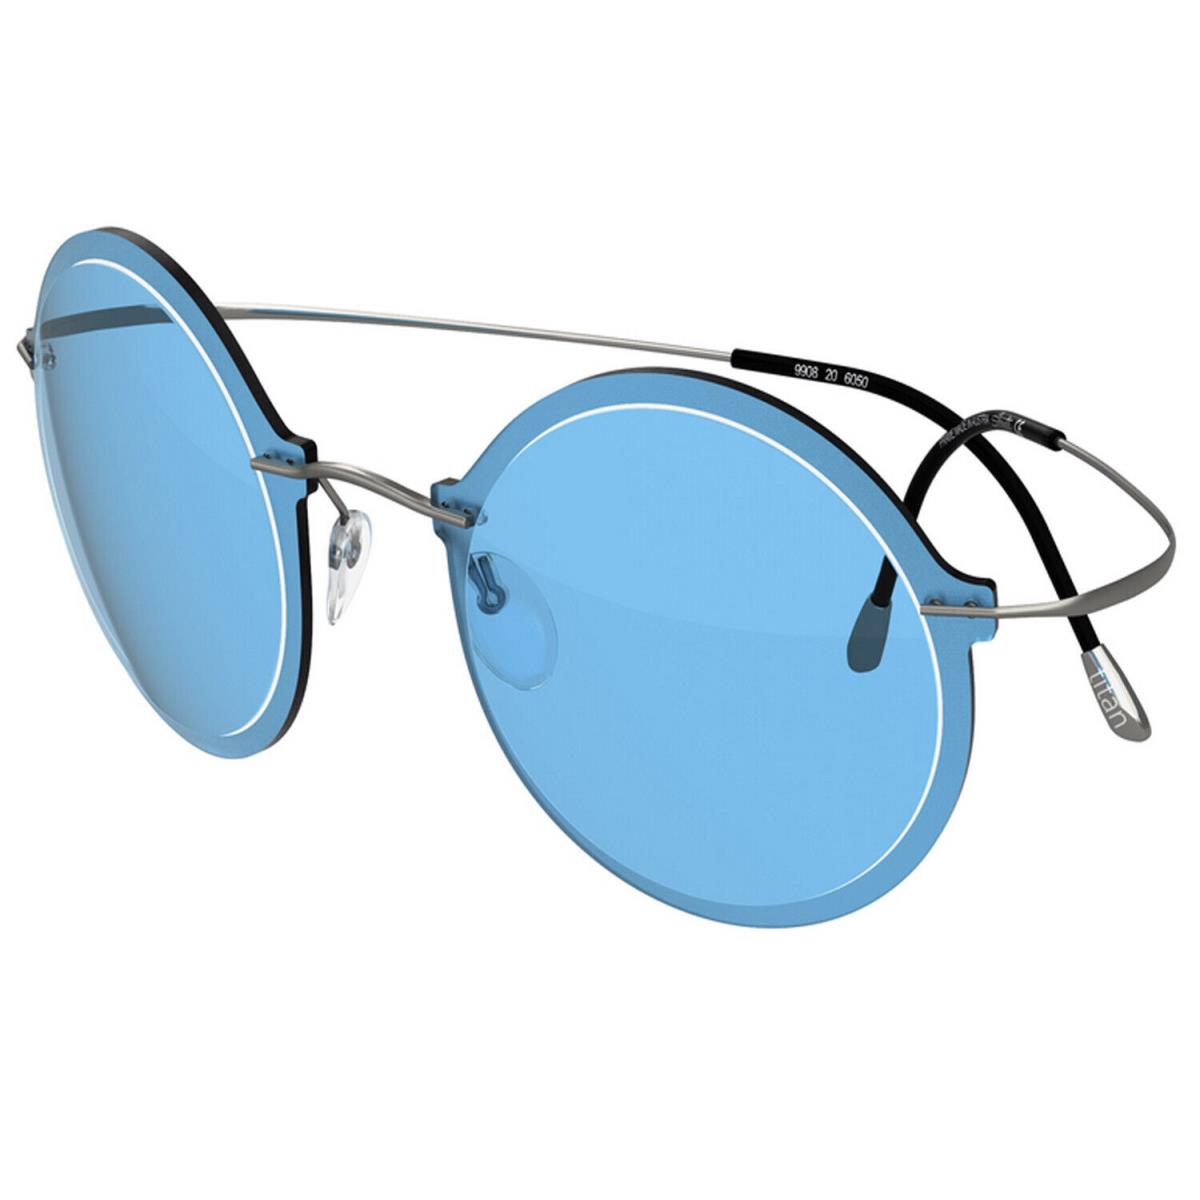 Silhouette Sunglasses Wes Gordon 54-19-115 Blue Ruthenium 9908-6053